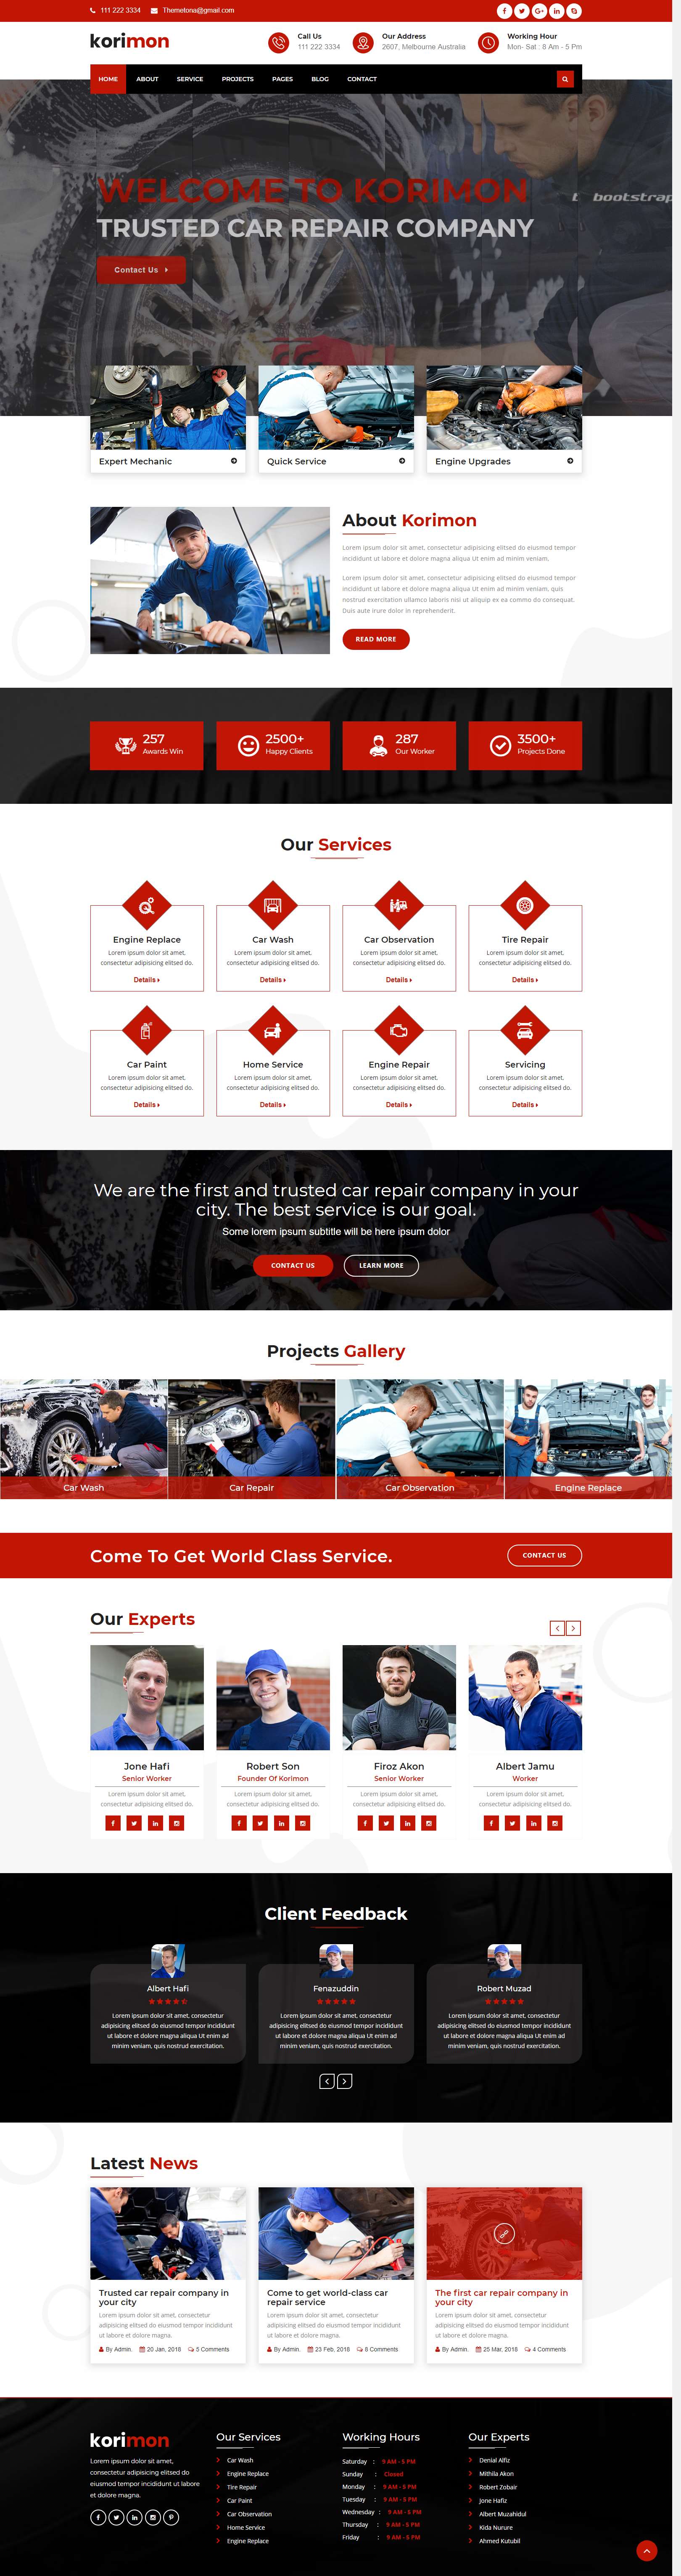 红色简洁风格的汽车维修4s店企业网站源码下载